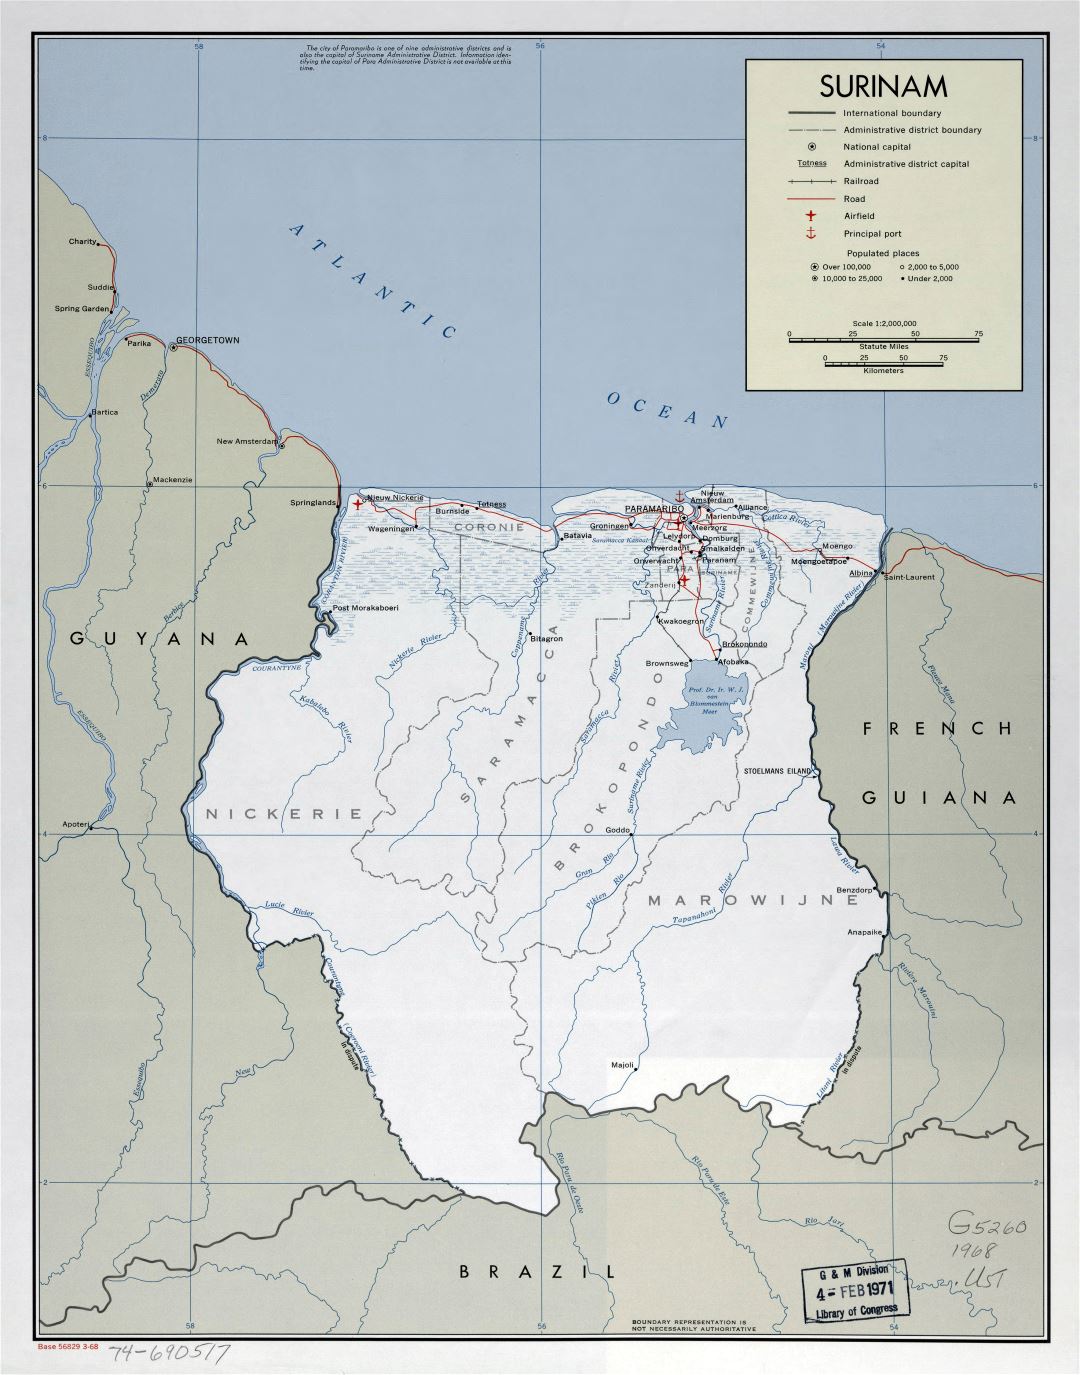 Большая подробная политическая и административная карта Суринама с пометками дорог, железных дорог, городов, морских портов и аэропортов - 1968